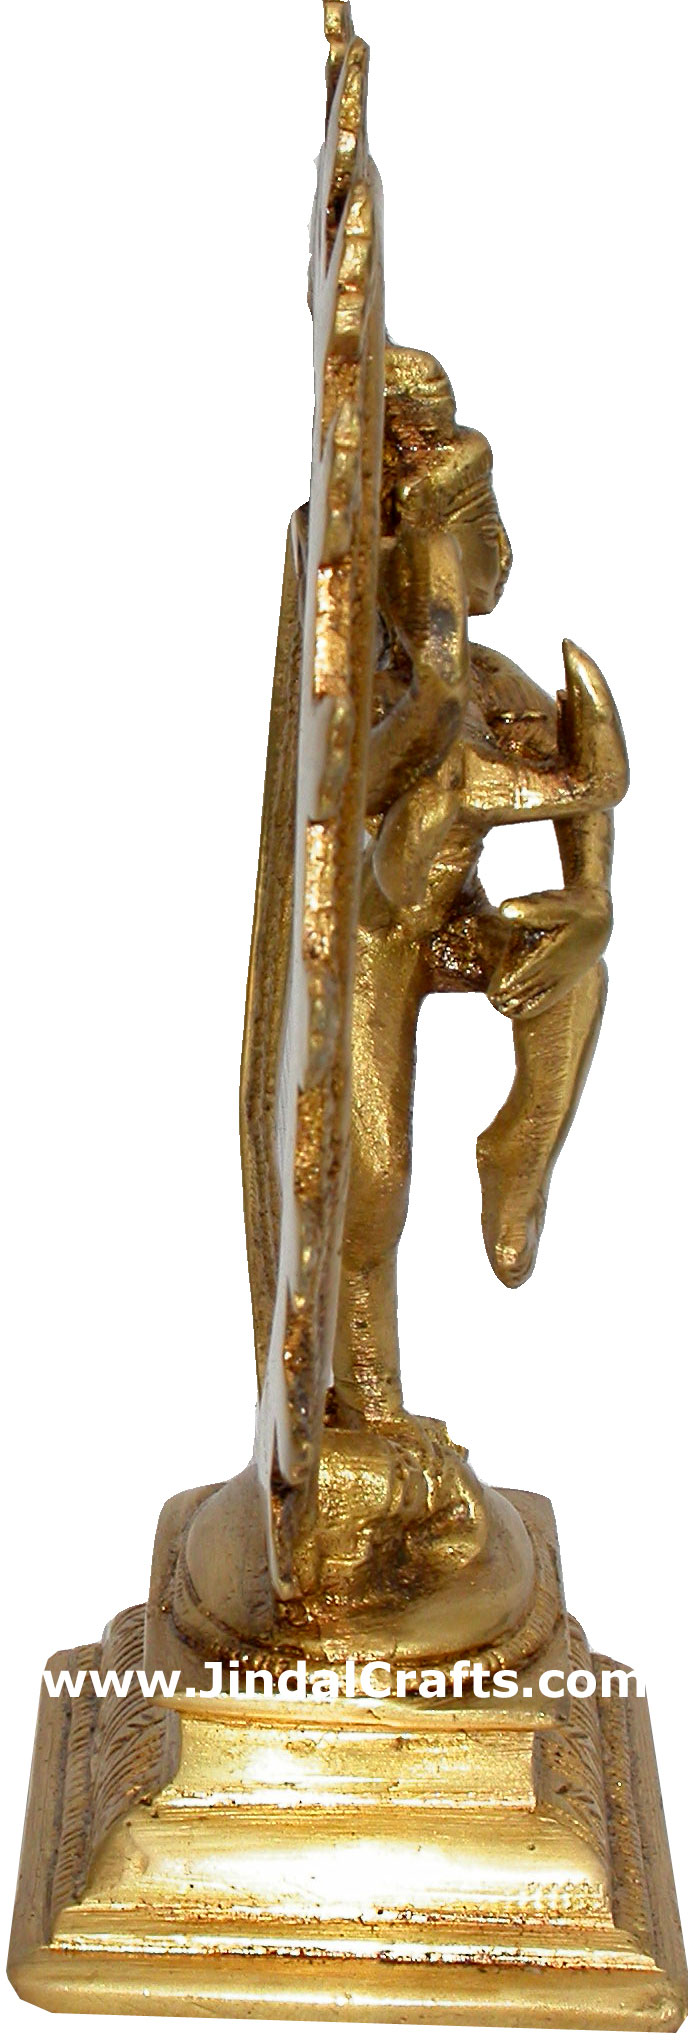 Natraja Lord Shiva Brass Sculpture Idols India Crafts